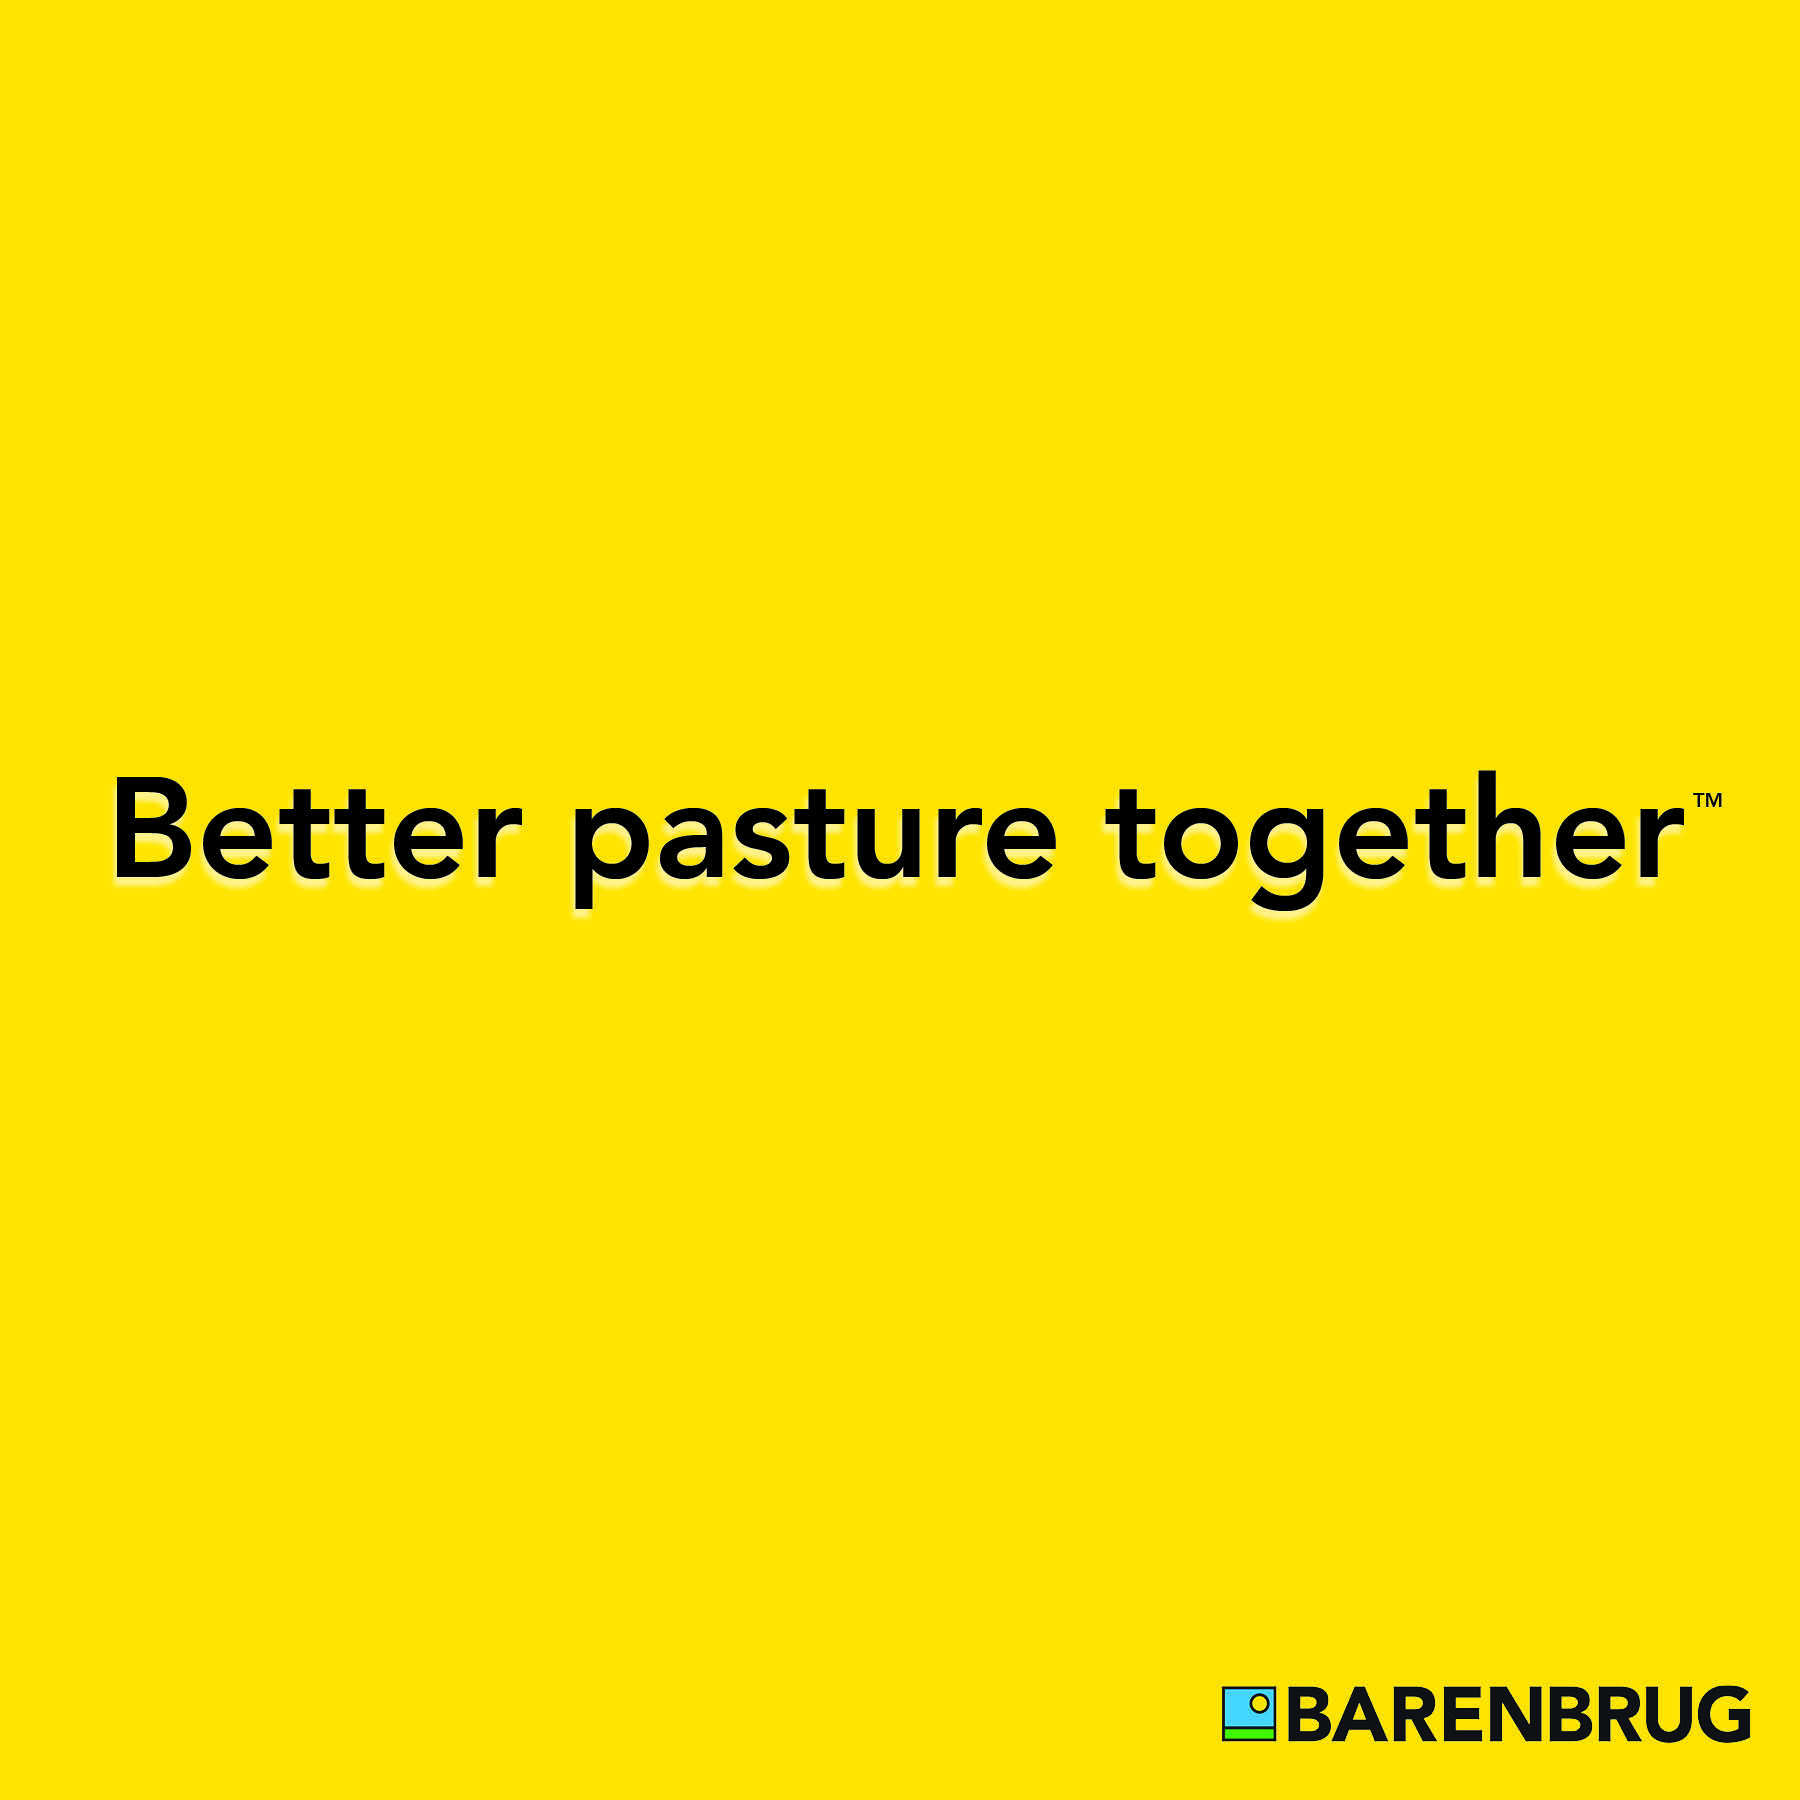 Better Pastures Together by Barenbrug